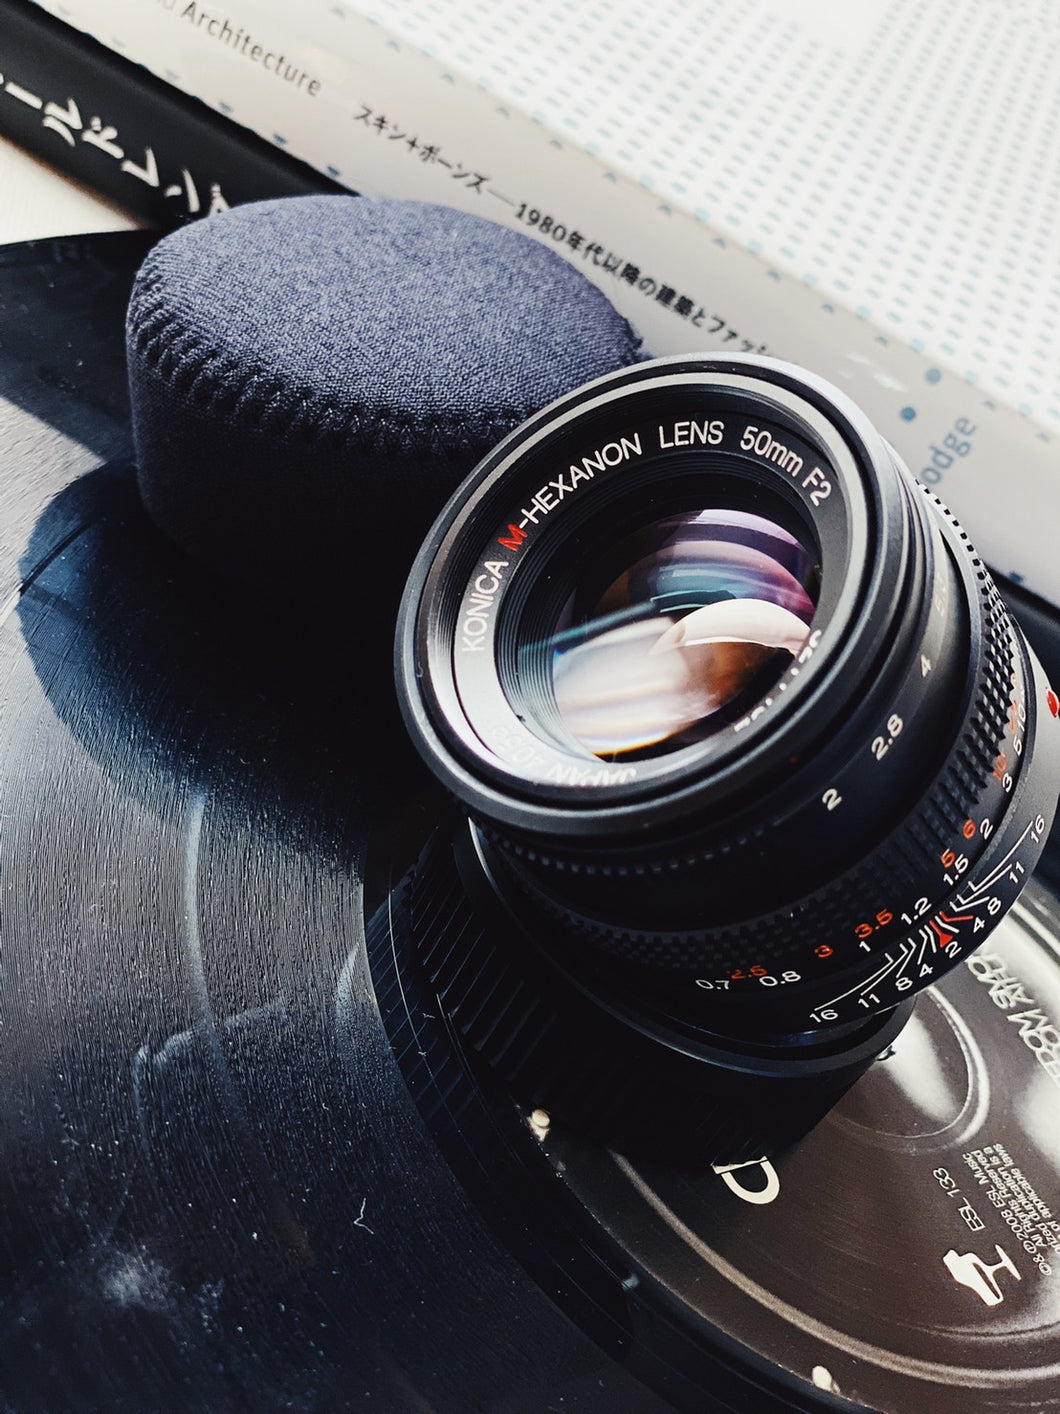 Konica M-Hexanon Lens 50mm 1:2